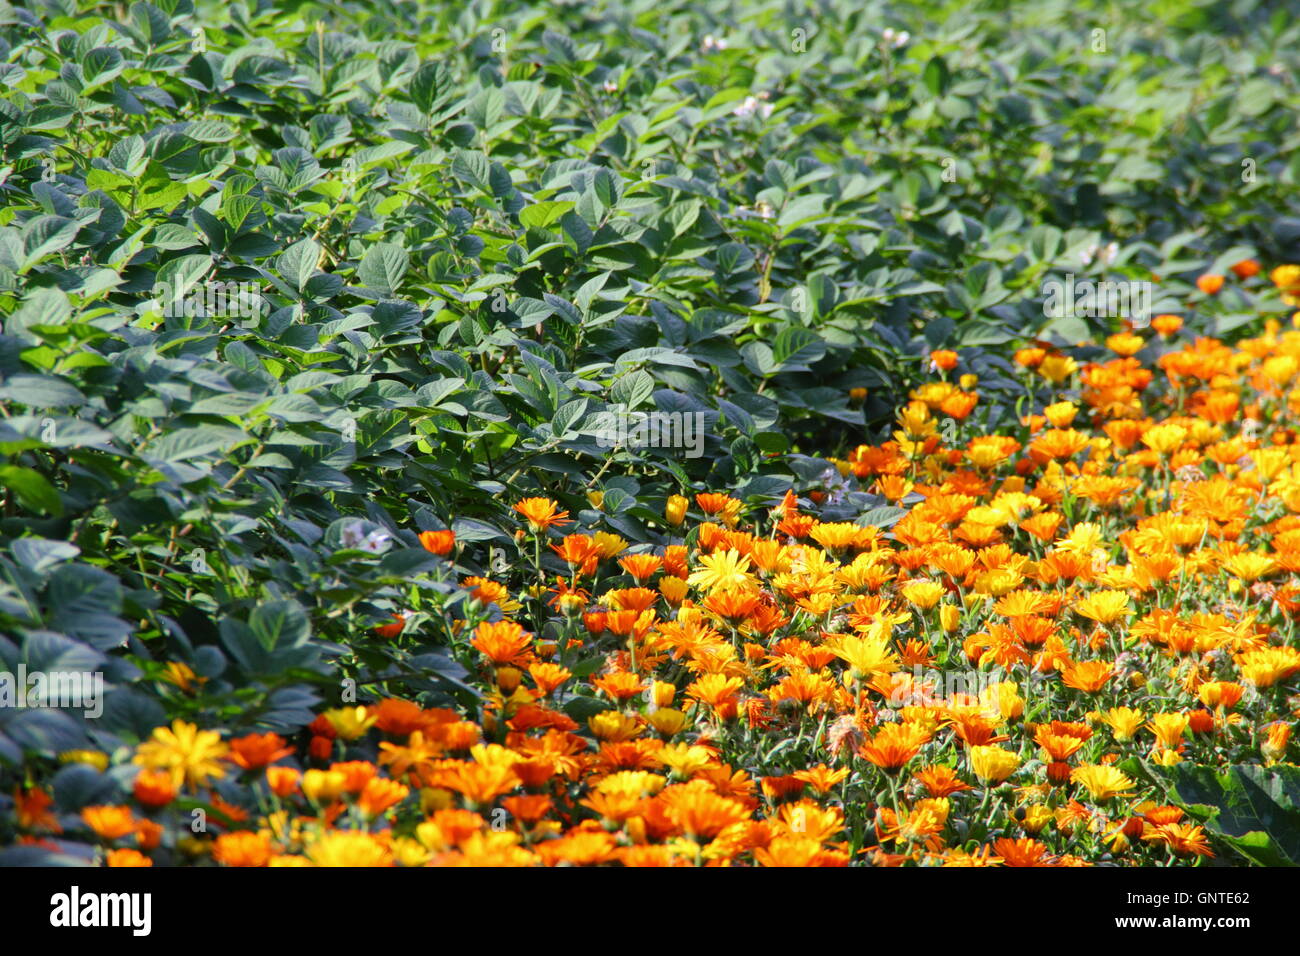 Compagnon de la plantation de fleurs de souci (Calendula officinalis pot) avec des cultures de légumes pour les parasites qui, dans un jardin de cuisine Banque D'Images